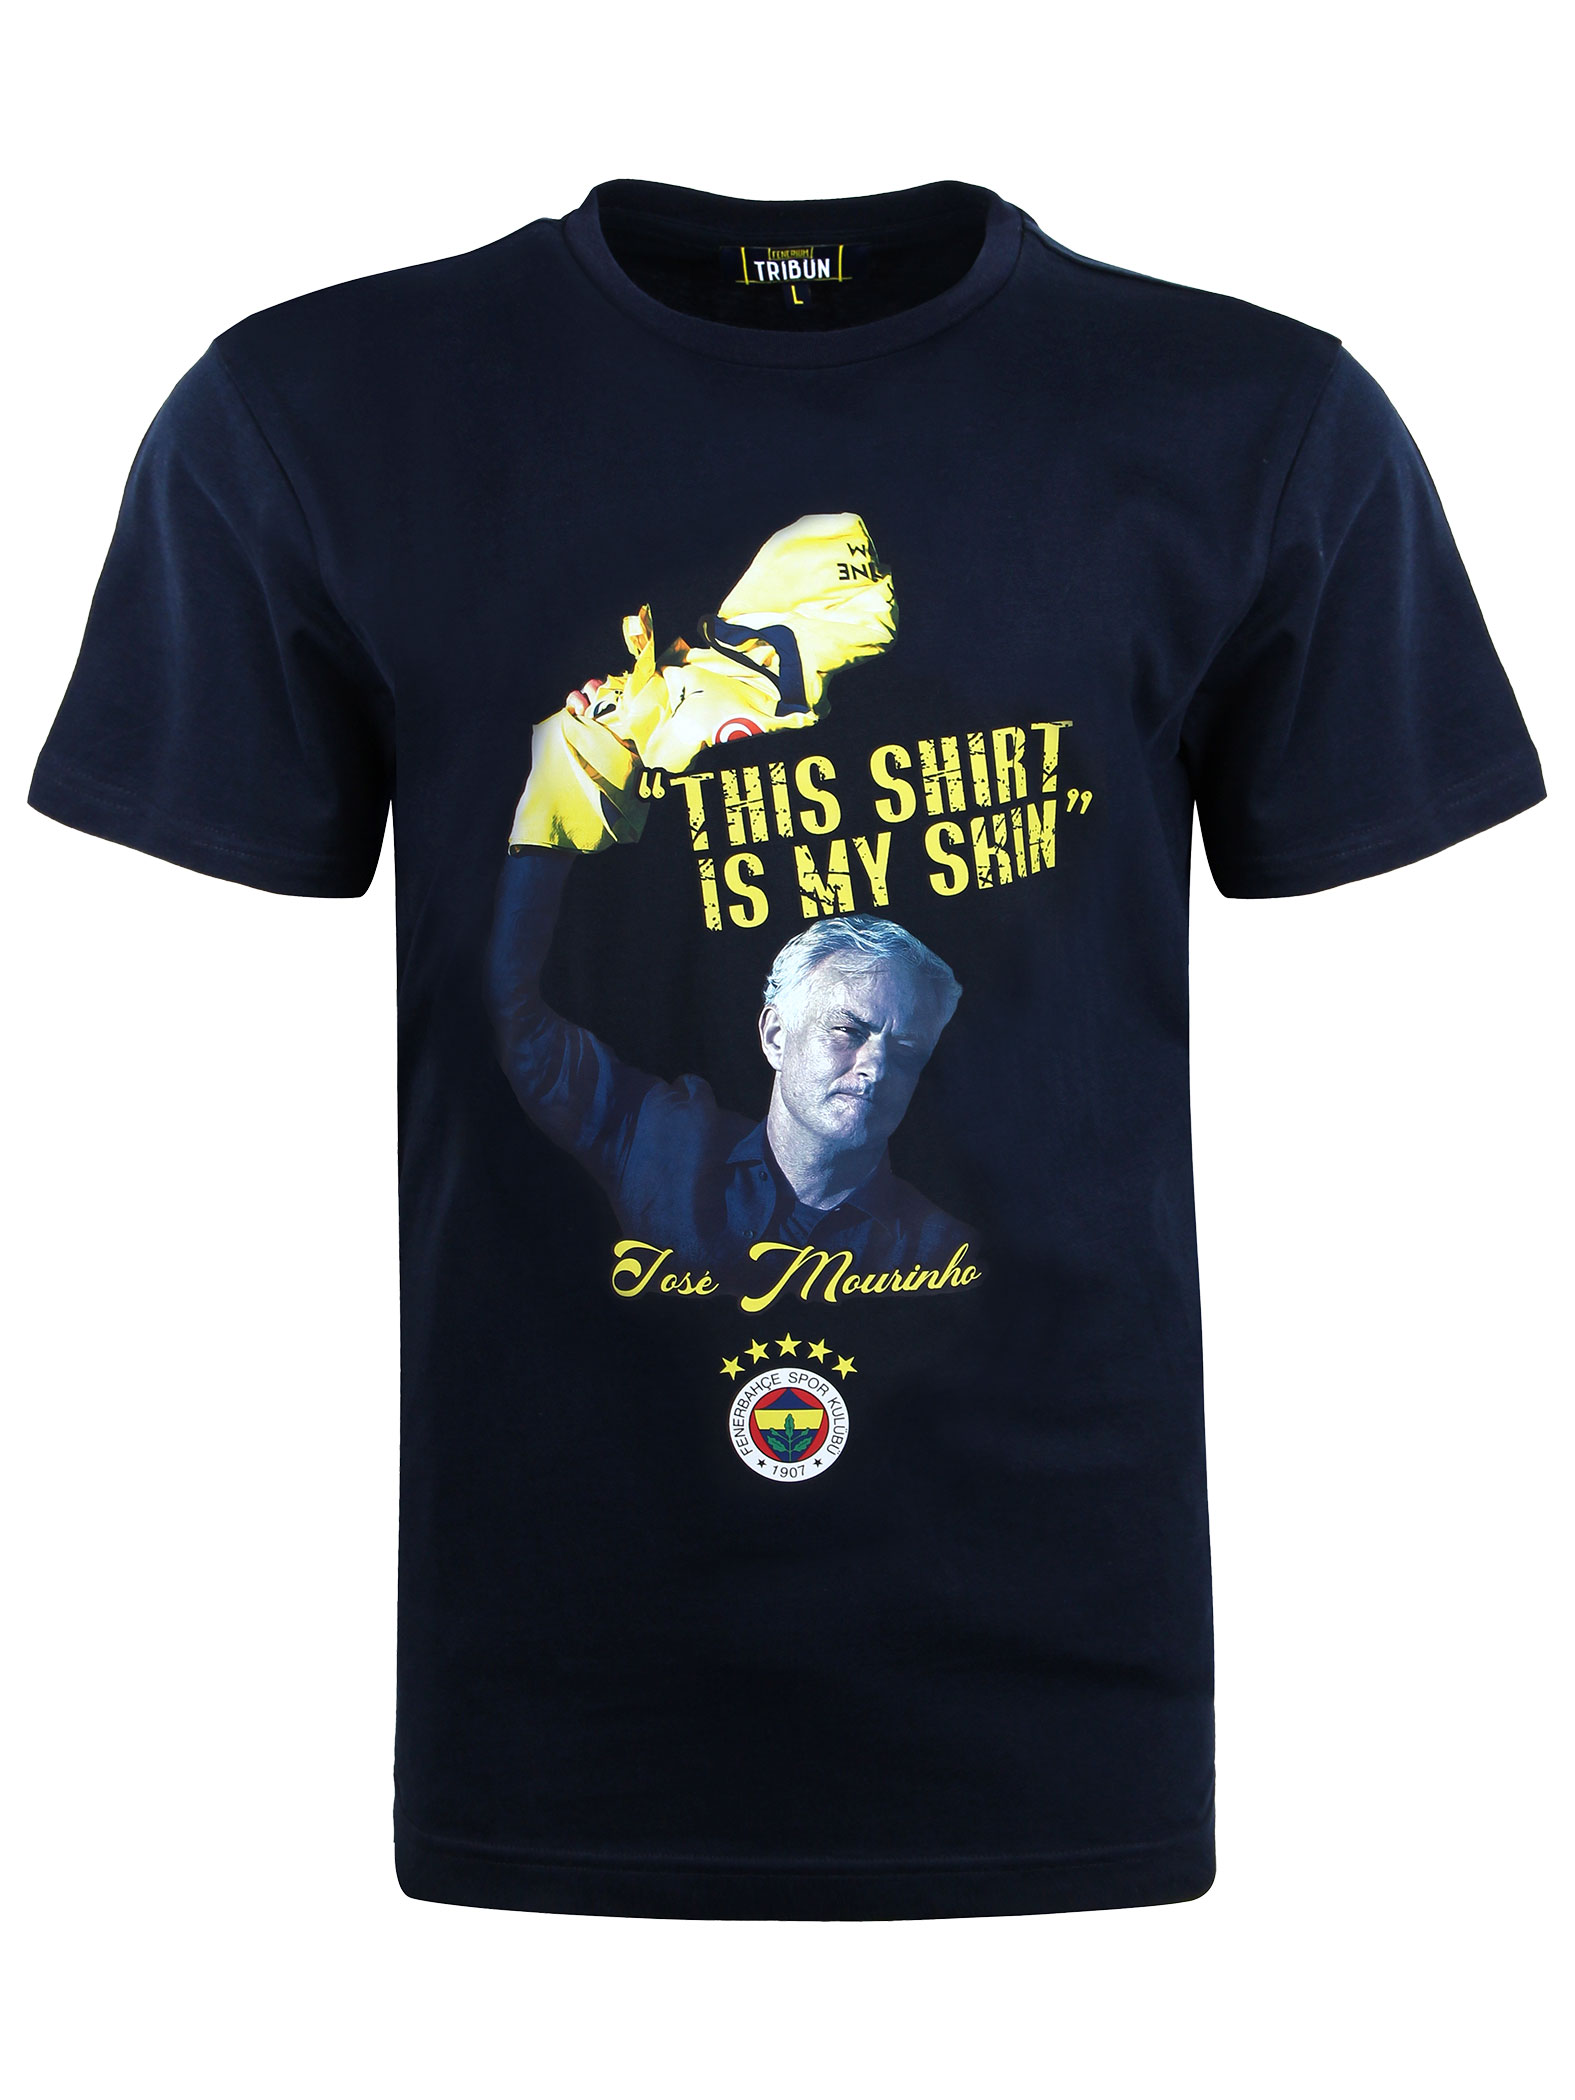 Fenerbahçe Mourinho "This Shirt is My Skin" Tshirt